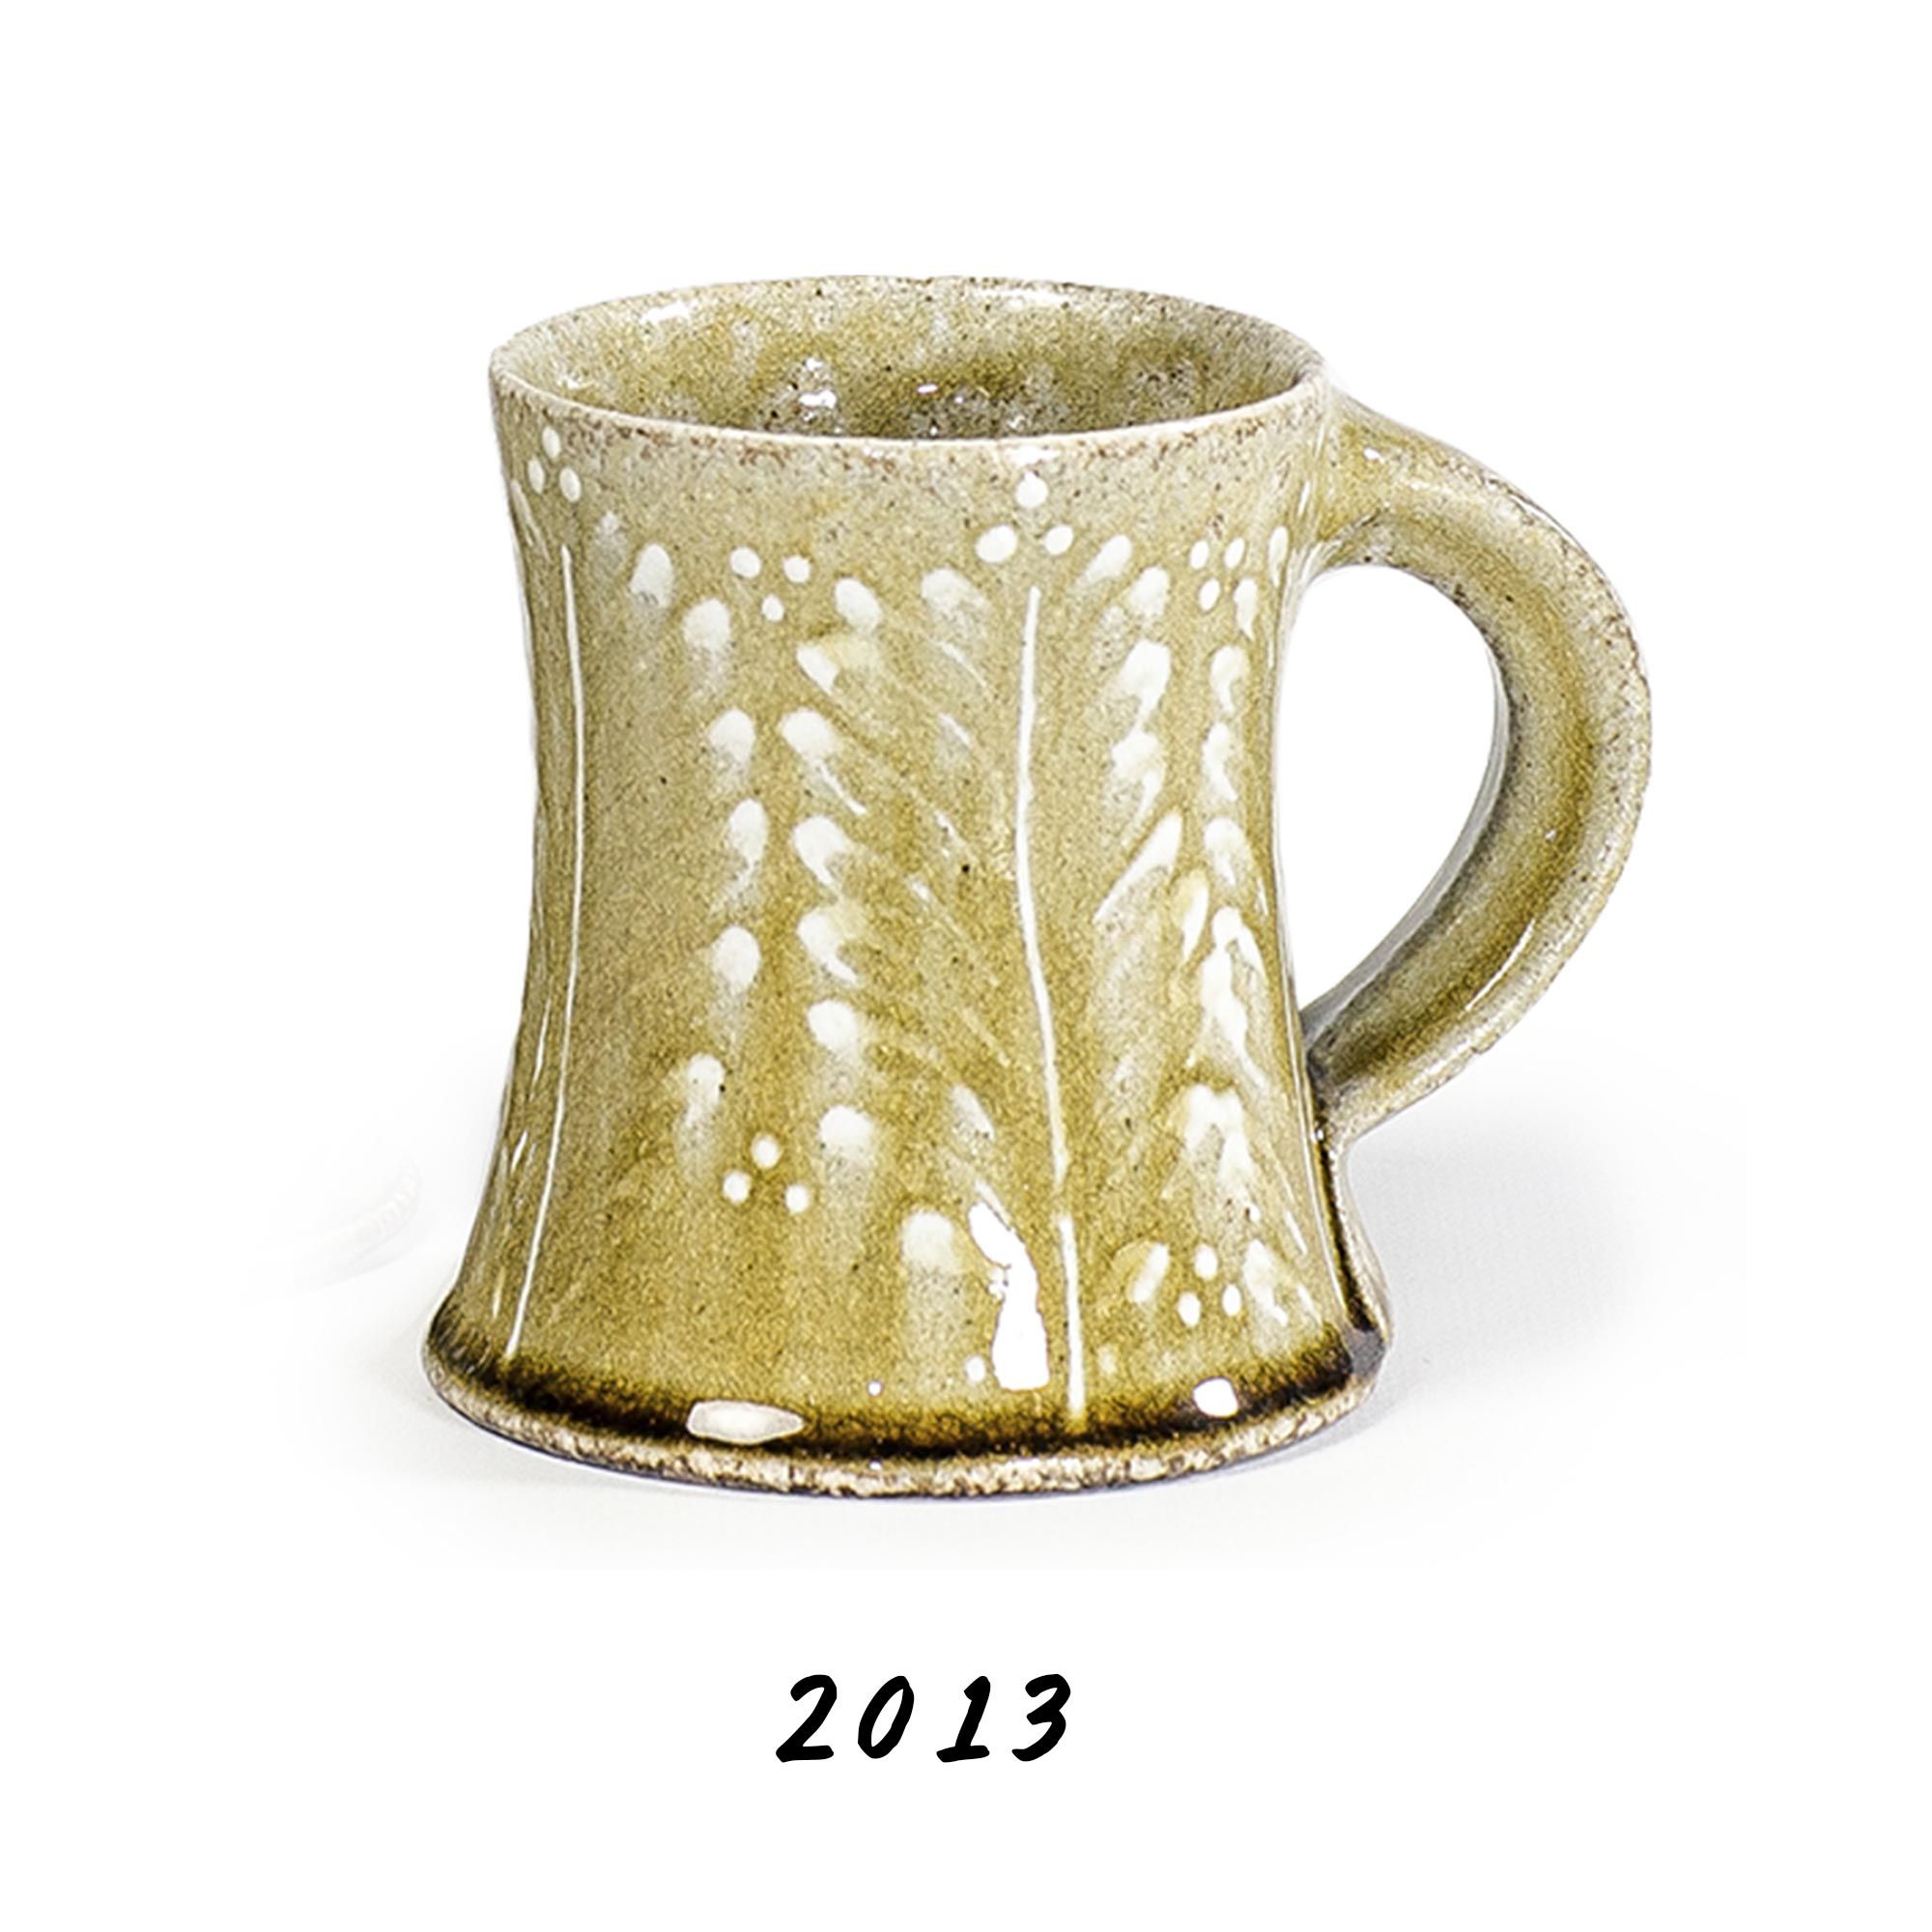 2013 wood fired mug